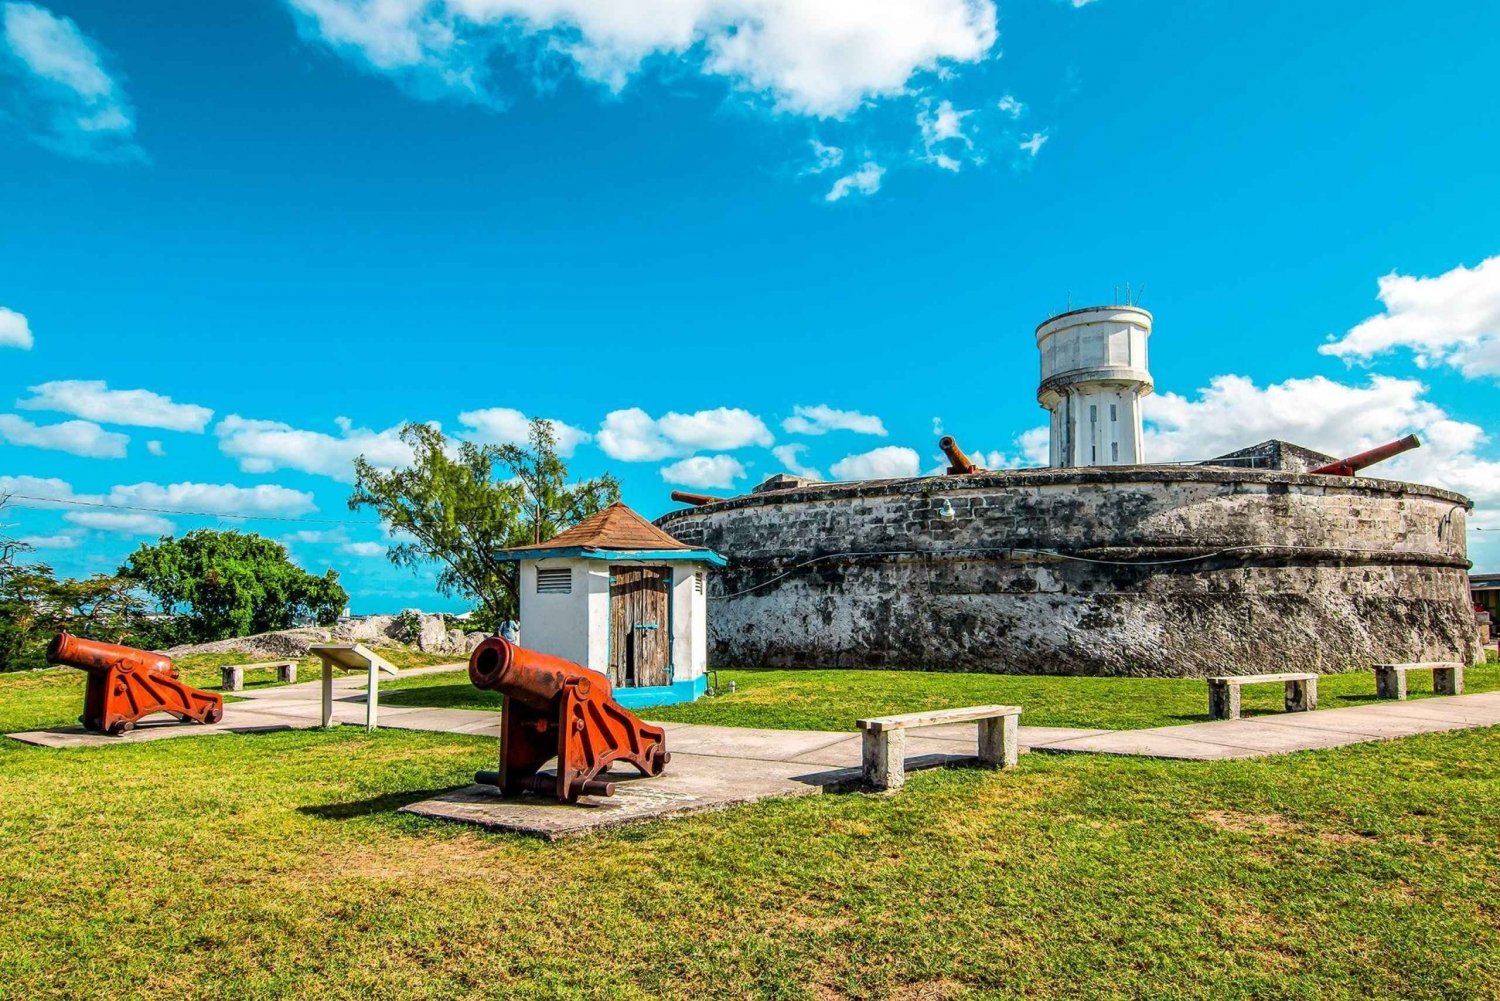 Explore a histórica Nassau!